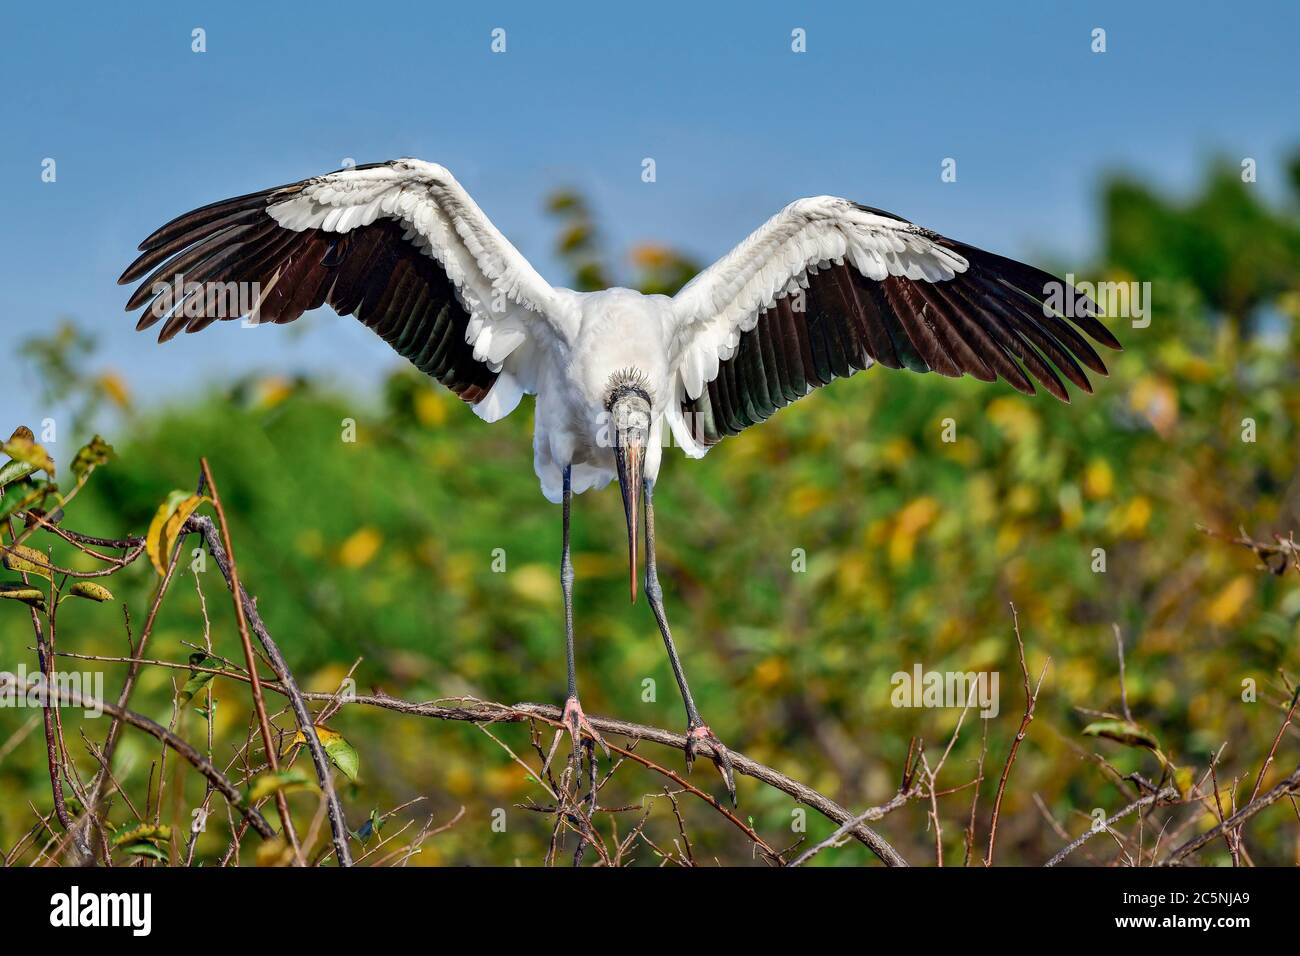 Pour un gros oiseau comme le bois Stork, il n'est pas facile de trouver l'équilibre debout sur la branche flexible. Banque D'Images